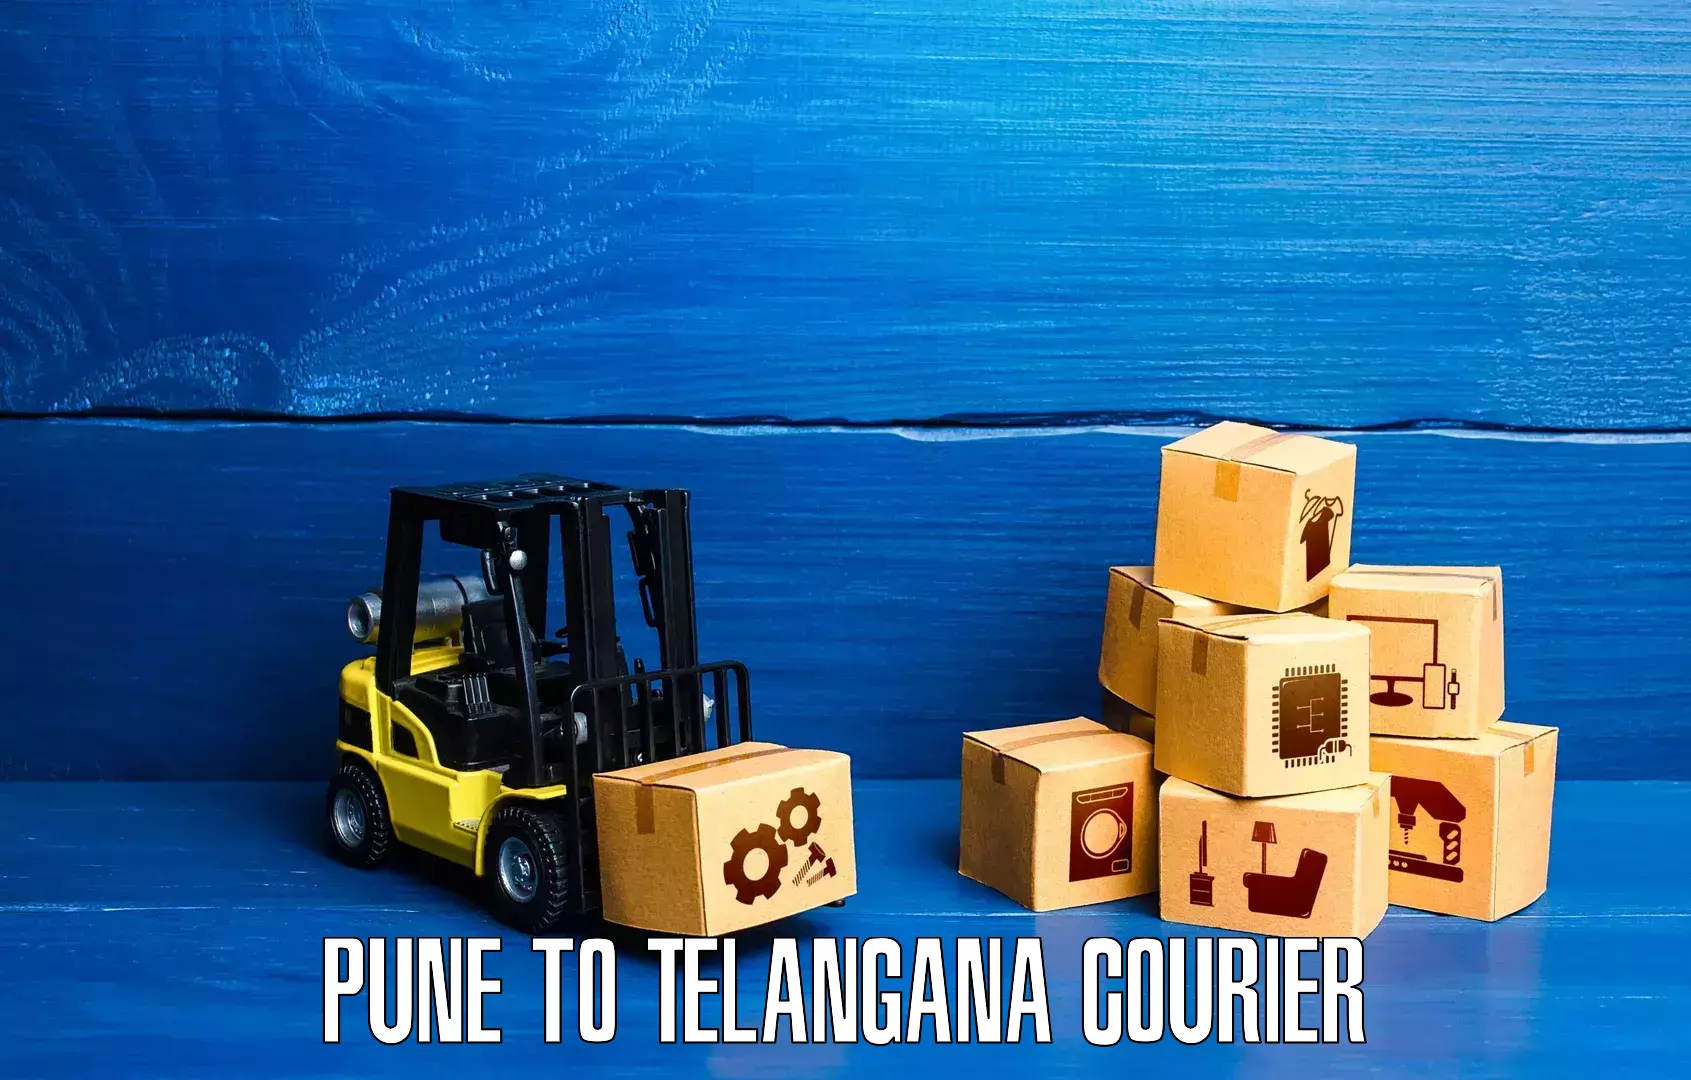 Reliable courier services Pune to Dubbak